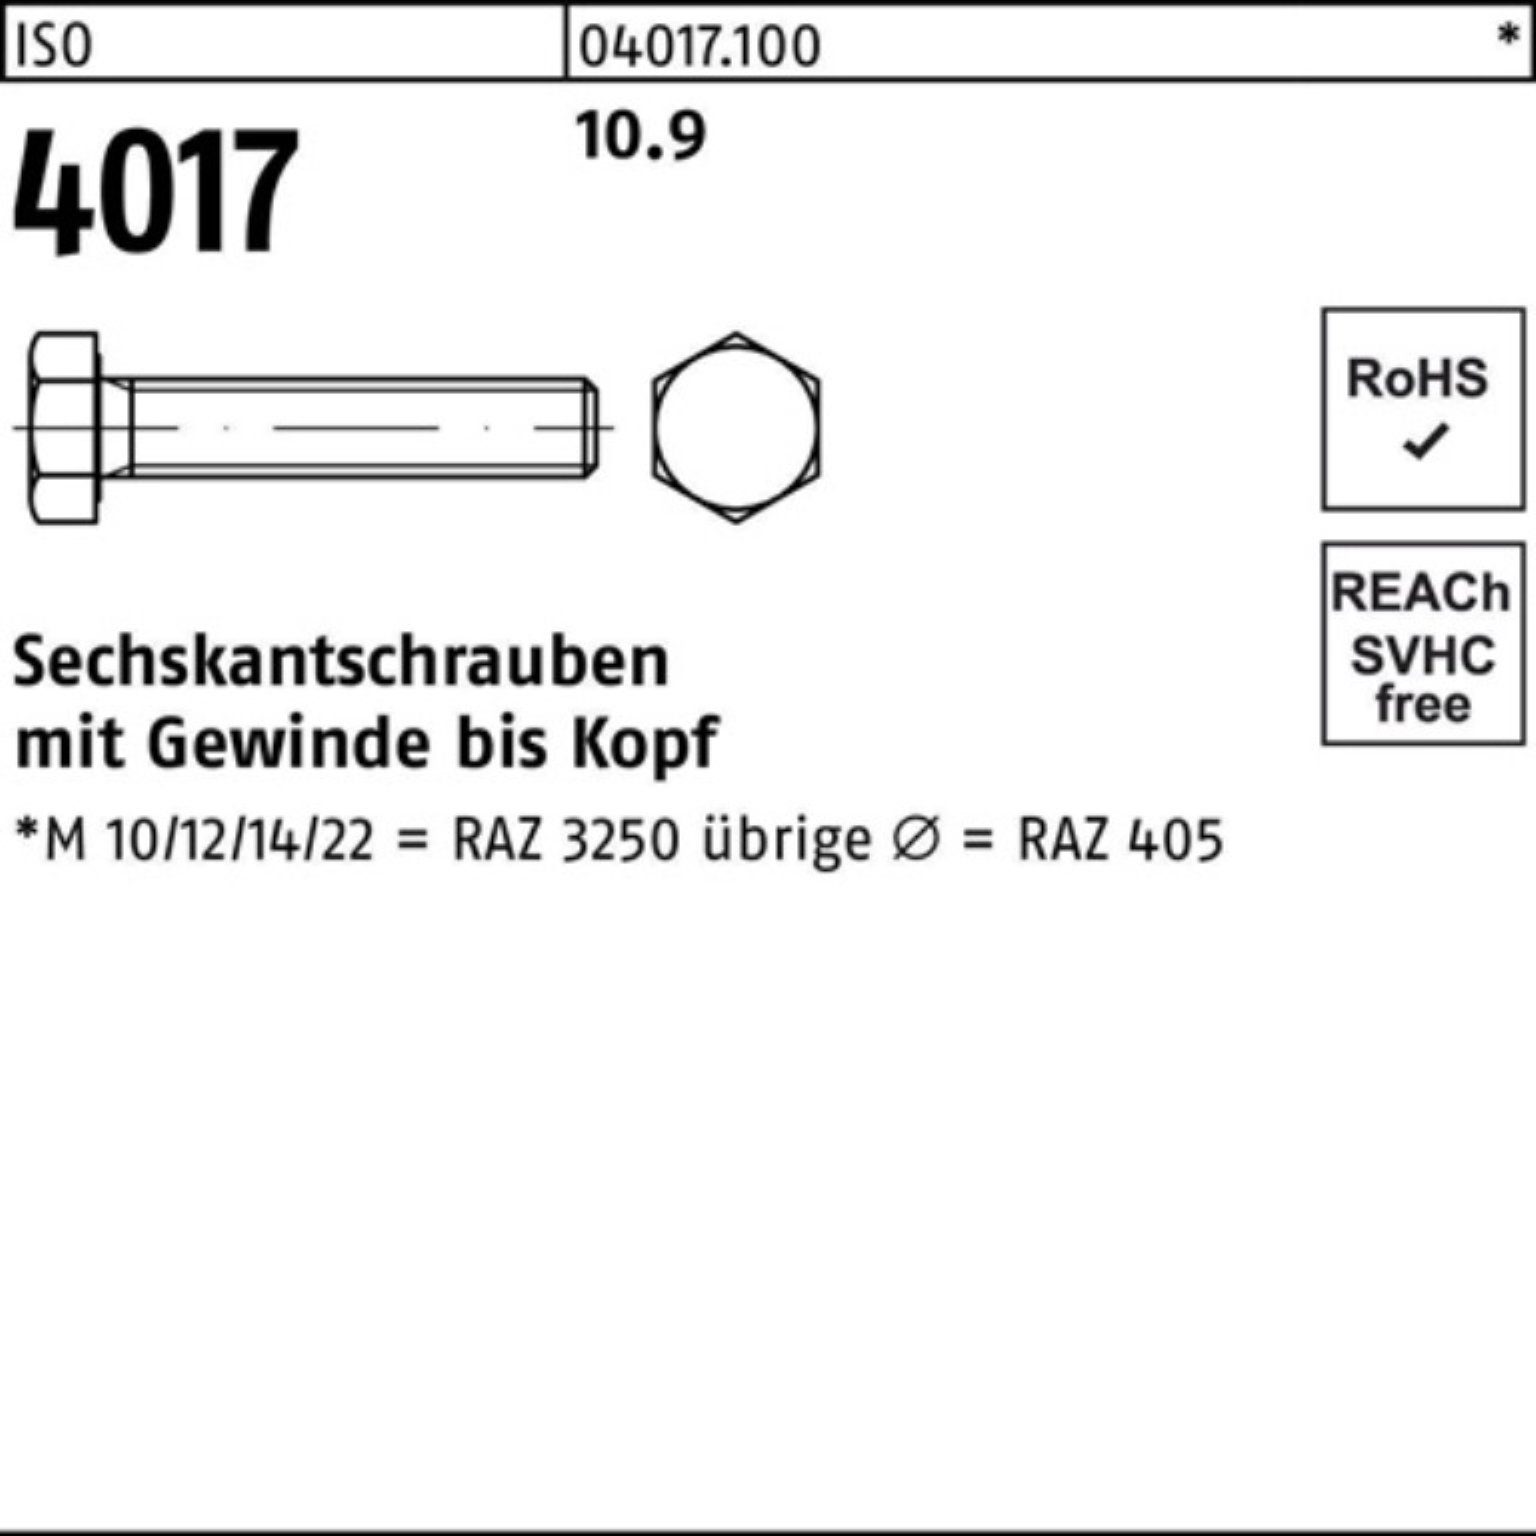 ISO Sechskantschraube Bufab 16 500 ISO M6x VG 500er Sechskantschraube Pack 10.9 40 4017 Stück